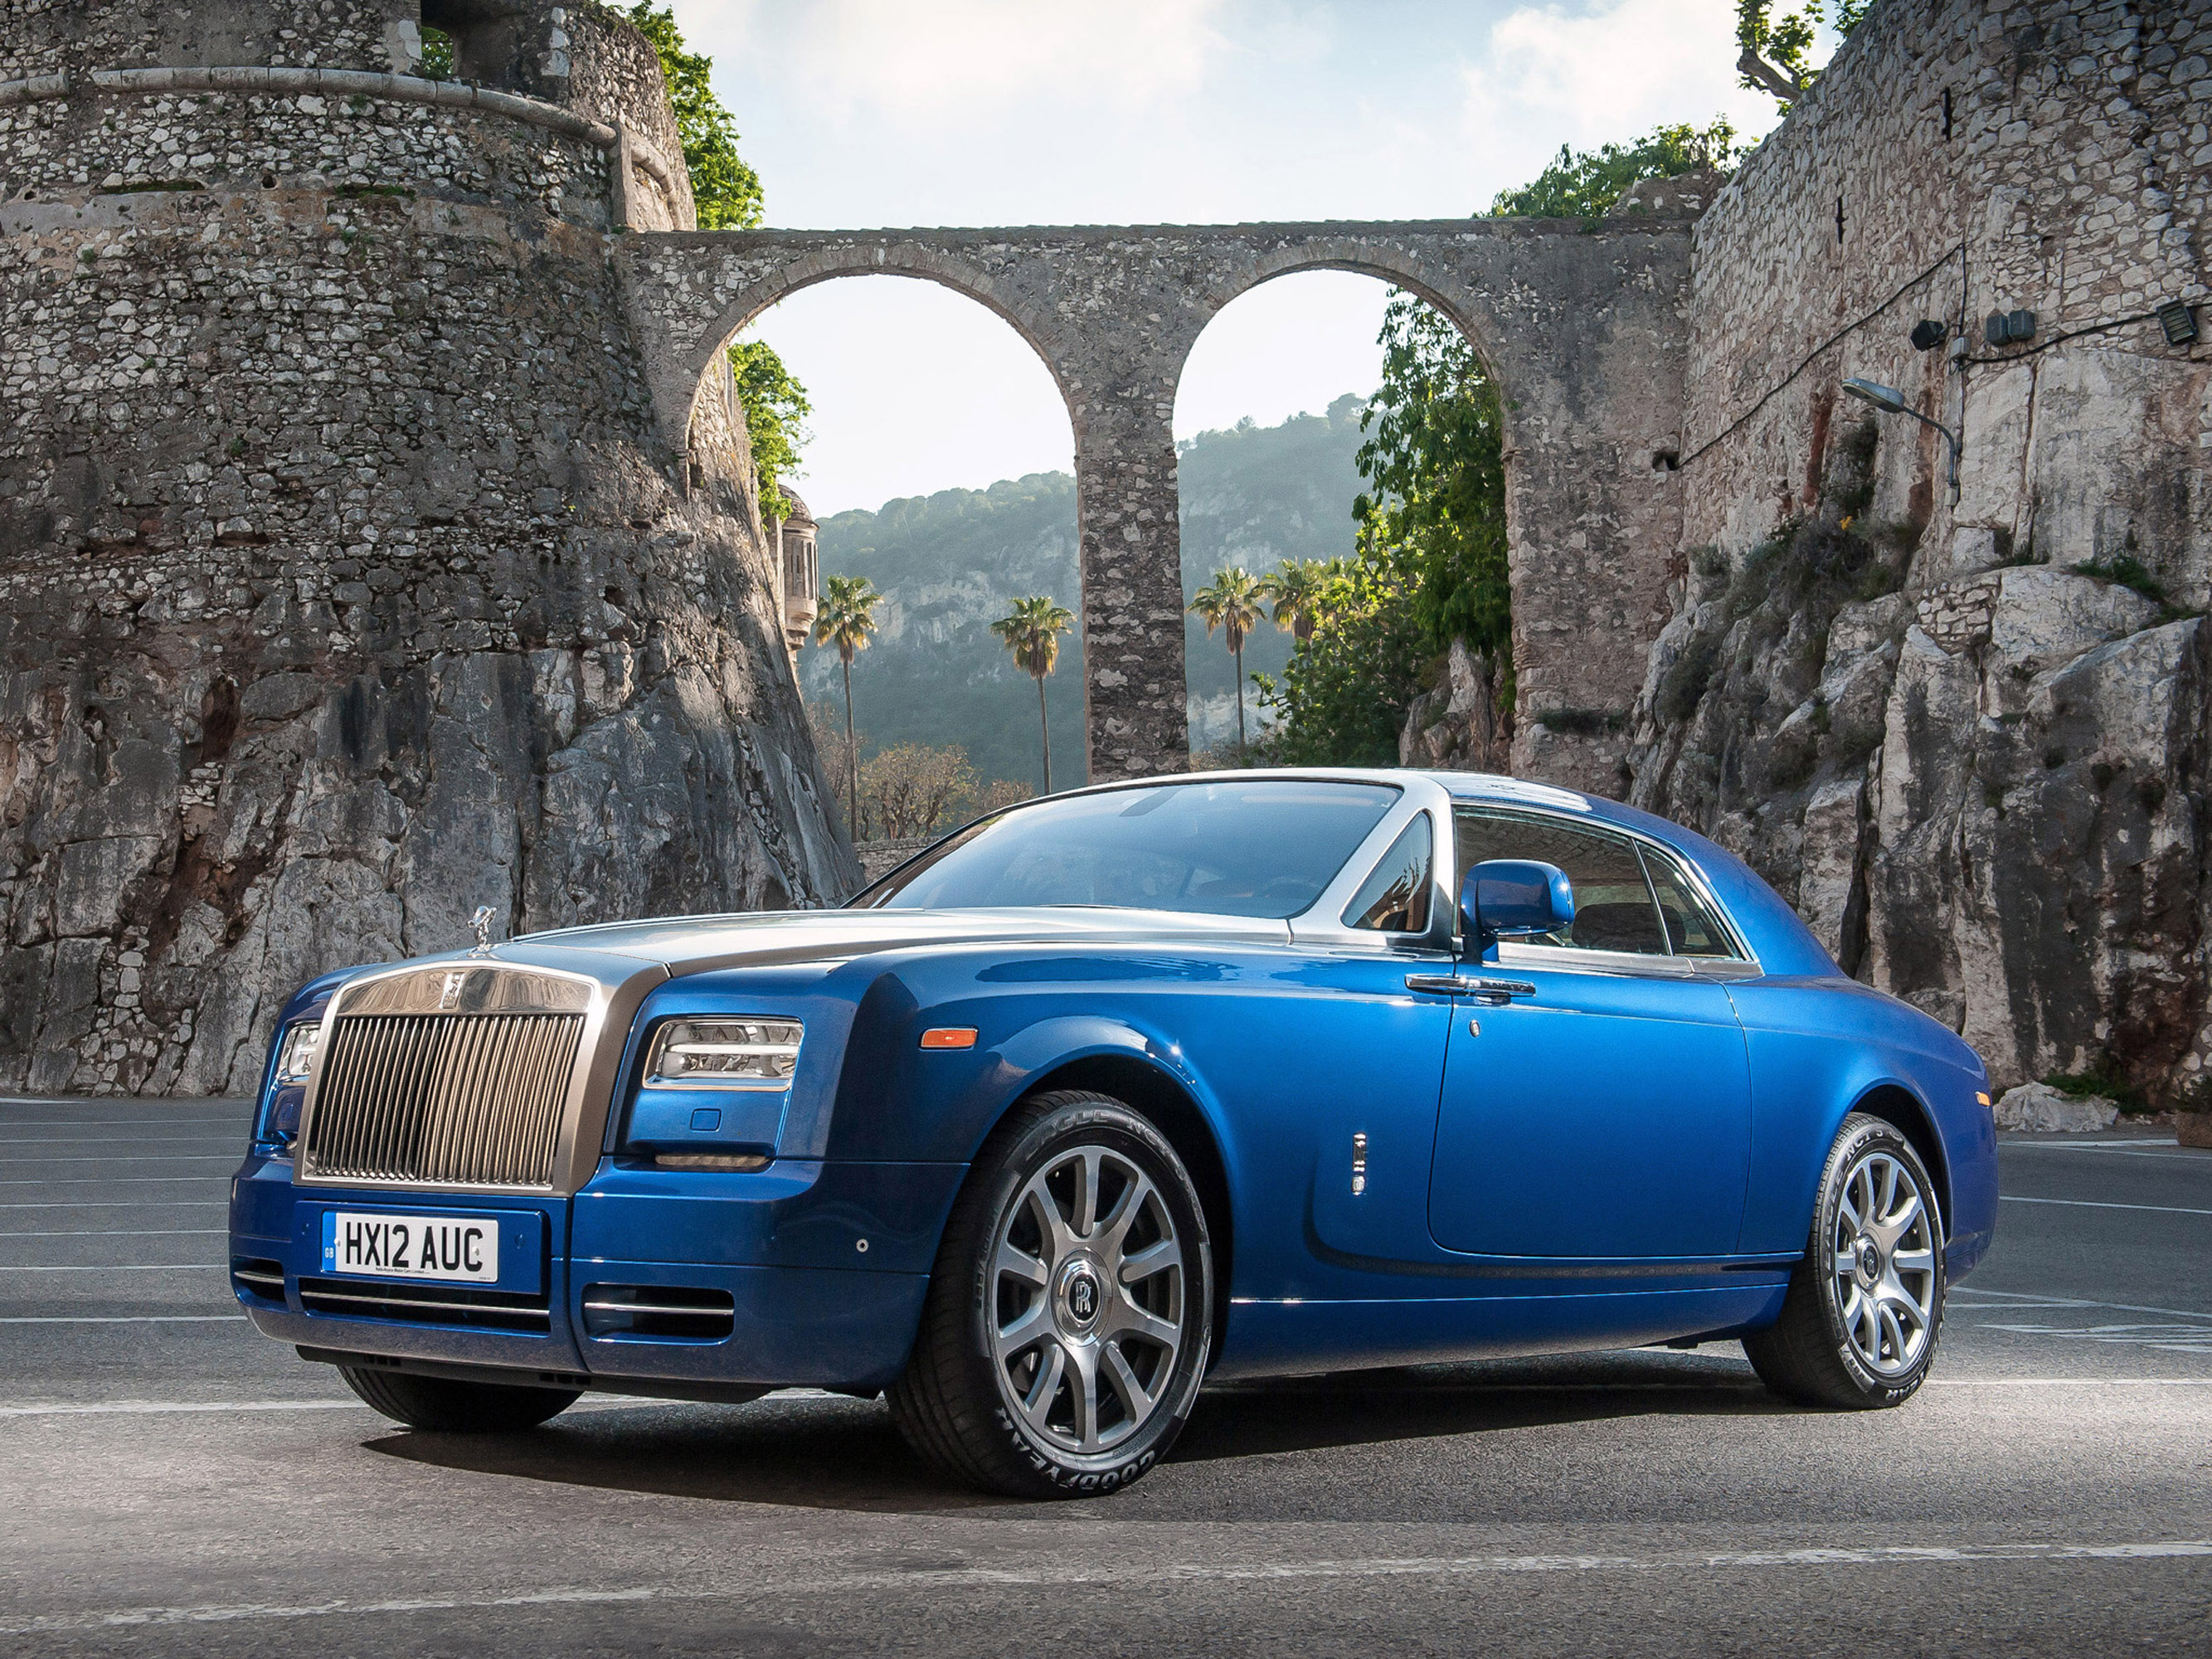 Роллс россия. Машина Rolls Royce Phantom. Роллс Ройс купе. Rolls Royce Phantom Coupe 2012. Rolls Royce Phantom купе.